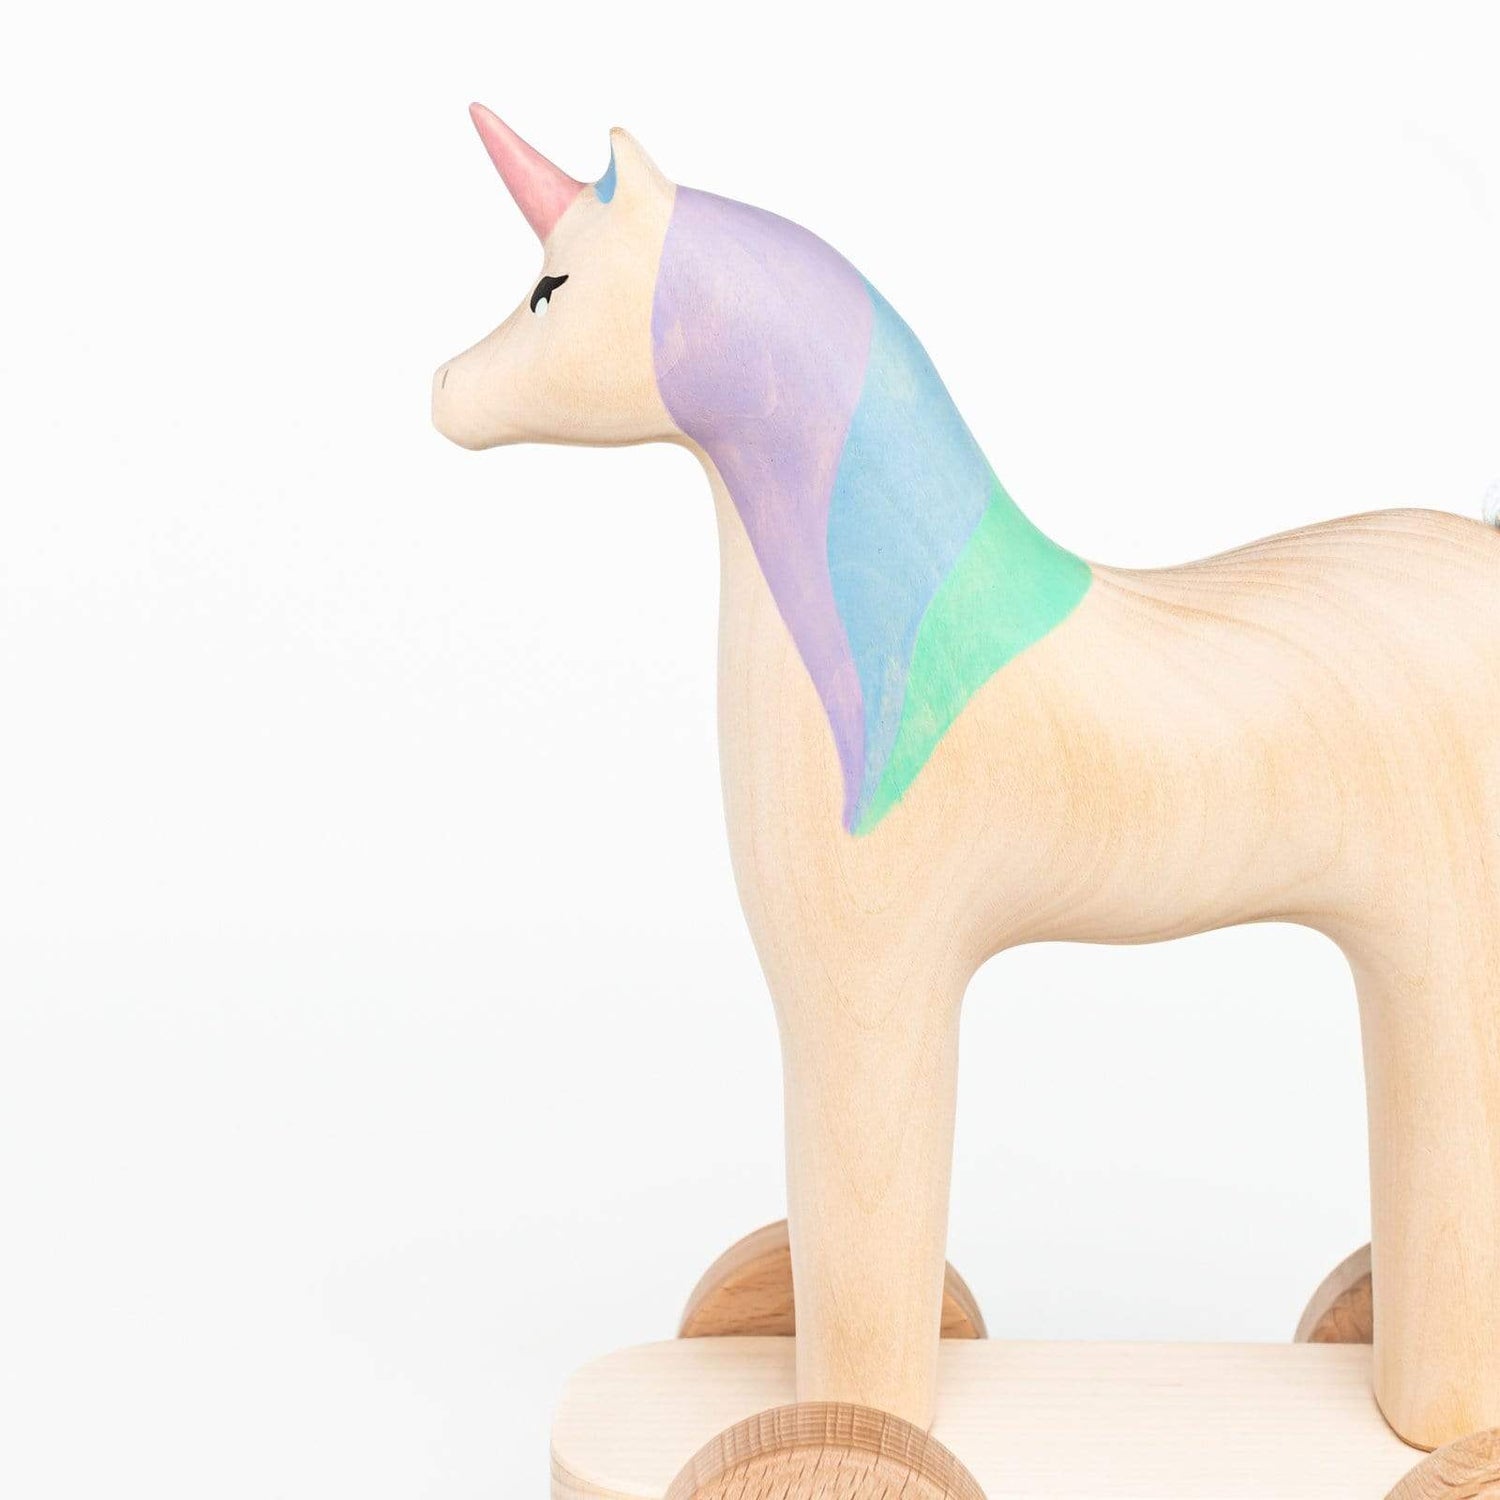 Izvetvey Wooden Toys Handmade Magnetic Unicorn Push Toy (Violet)